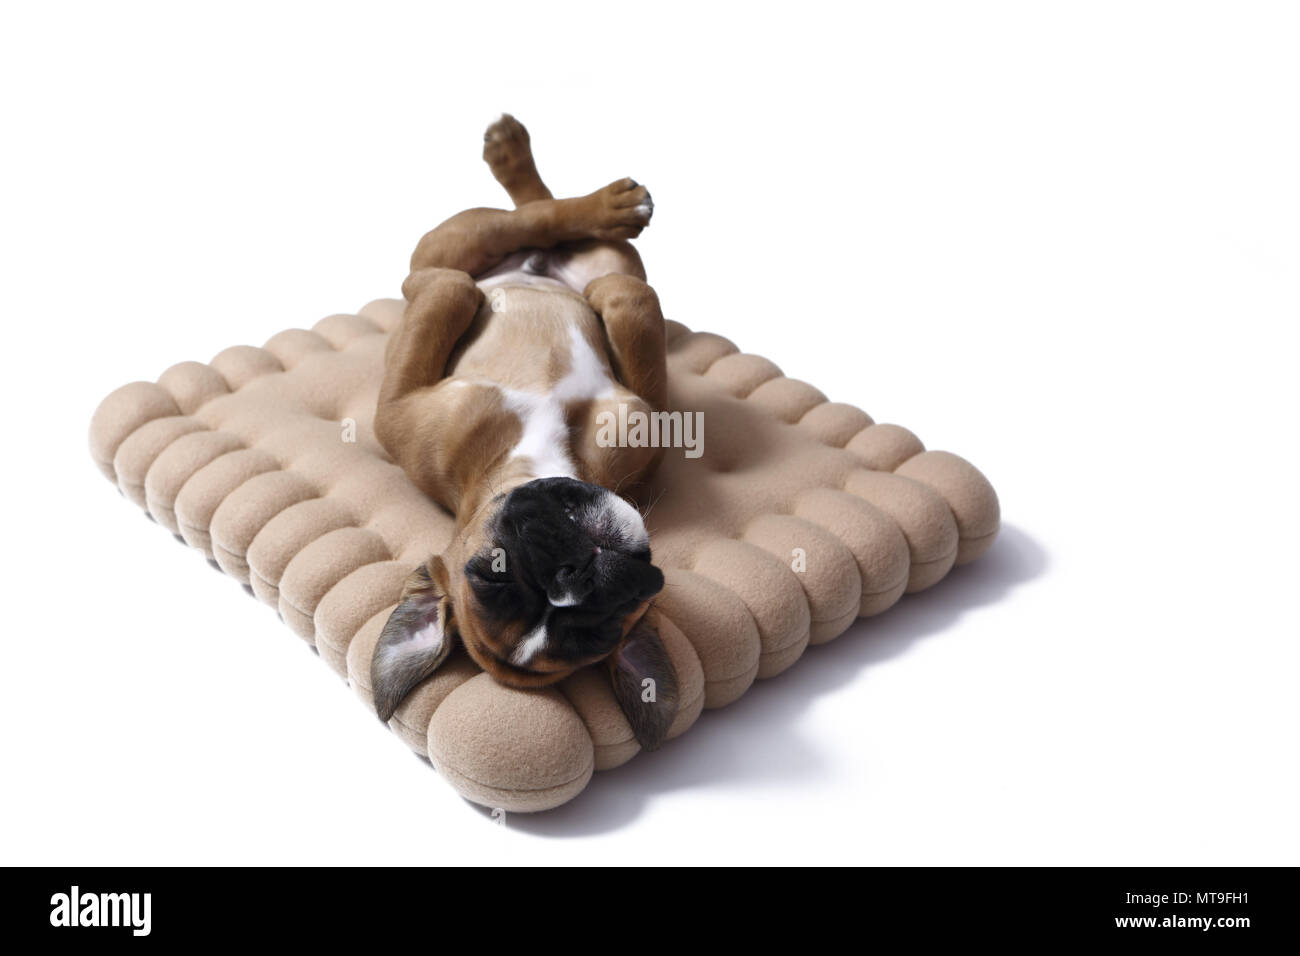 Boxeur allemand. Puppy (7 semaines) de dormir sur un coussin en forme de cookie. Studio photo Banque D'Images